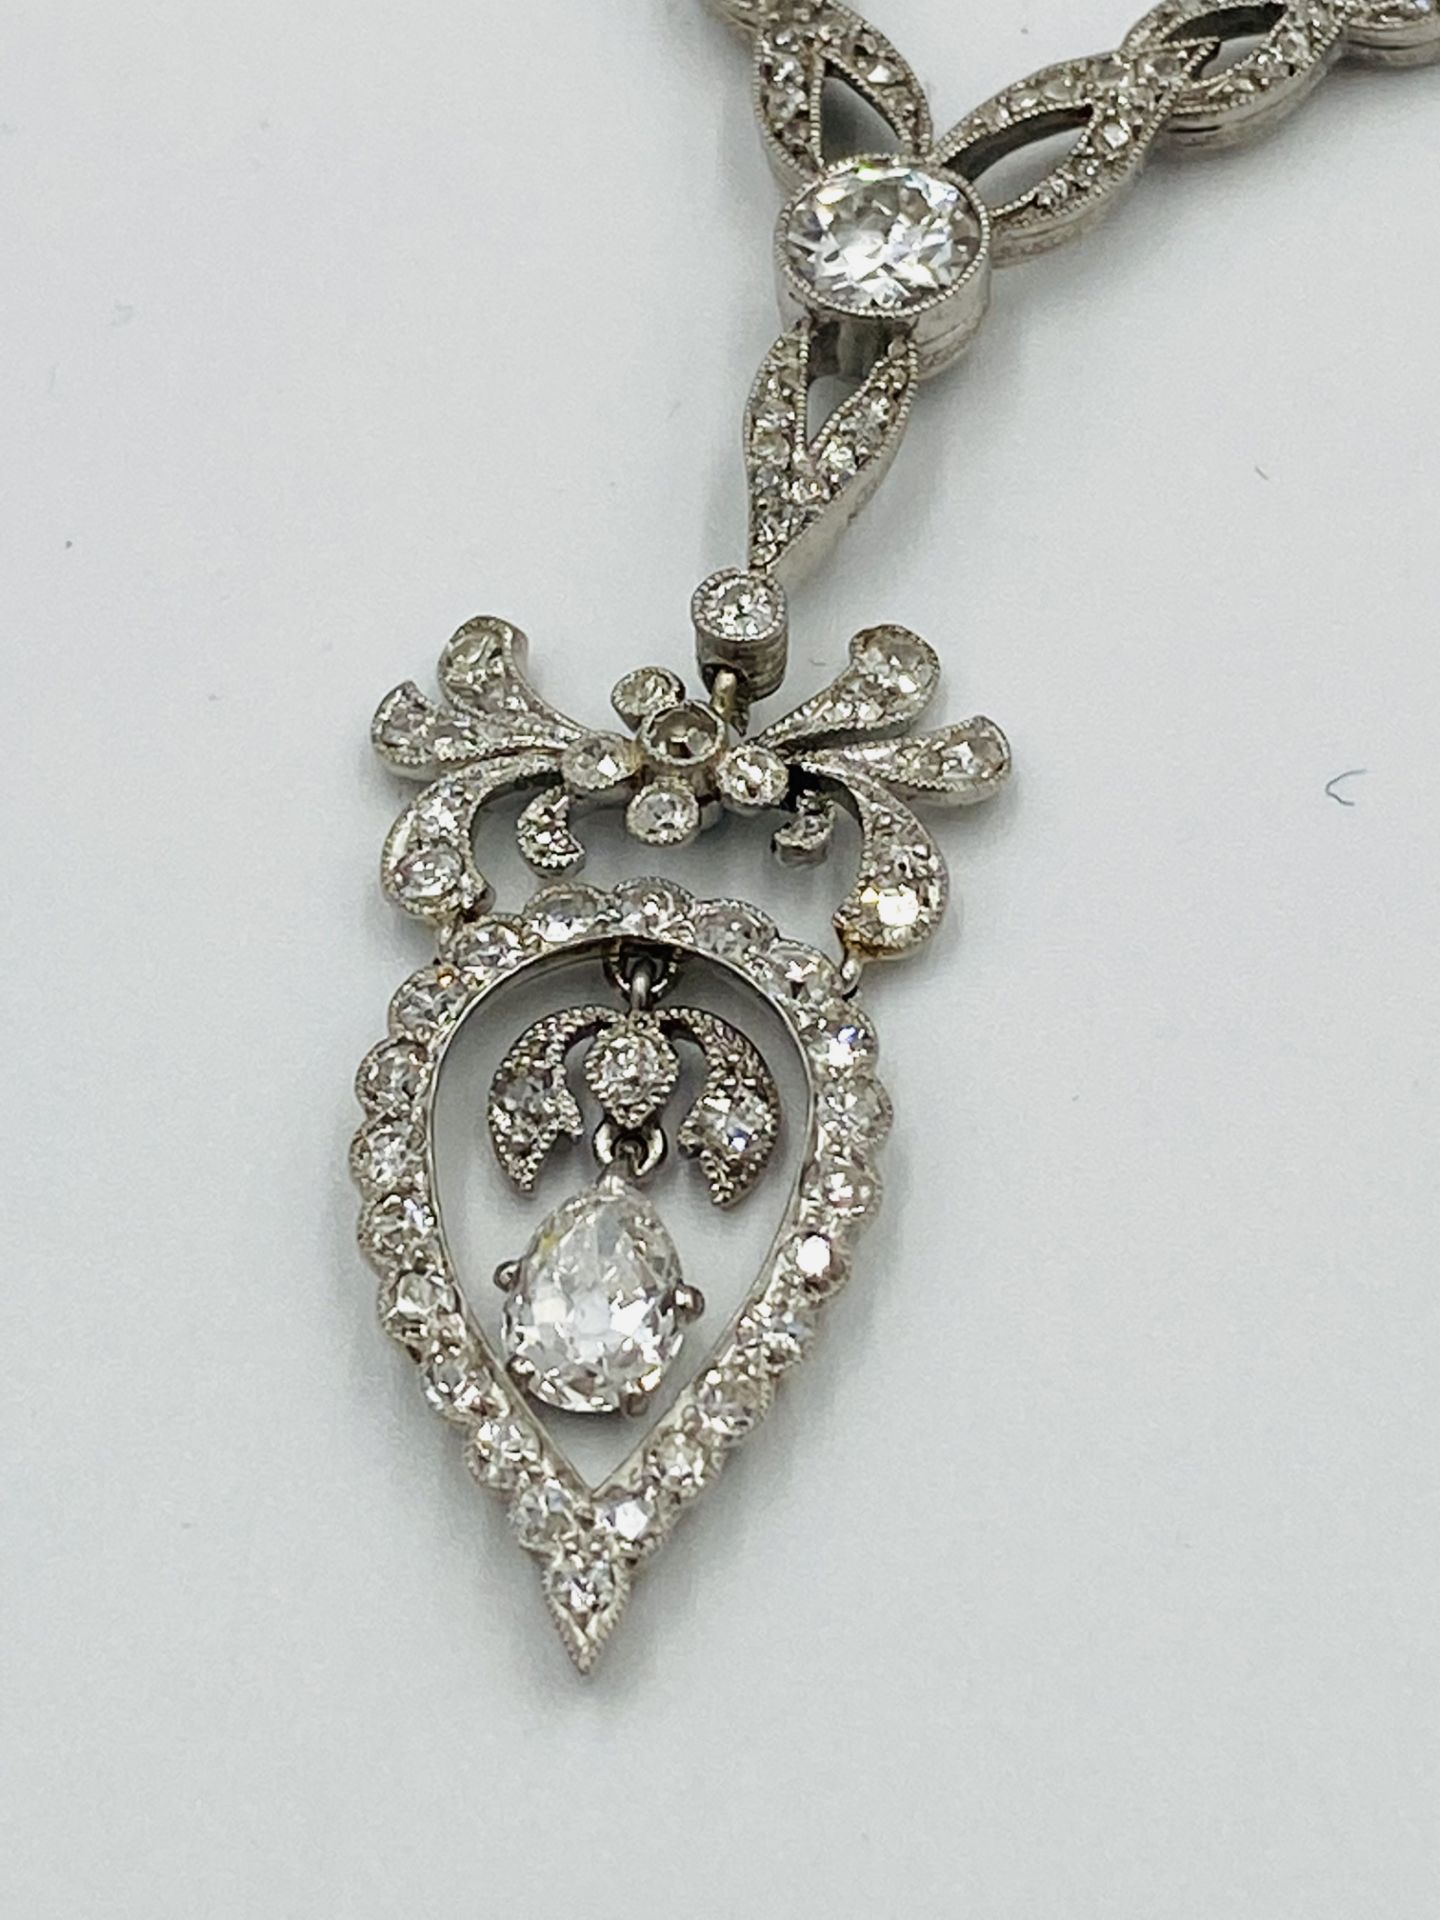 Edwardian white gold and diamond necklace - Image 9 of 10